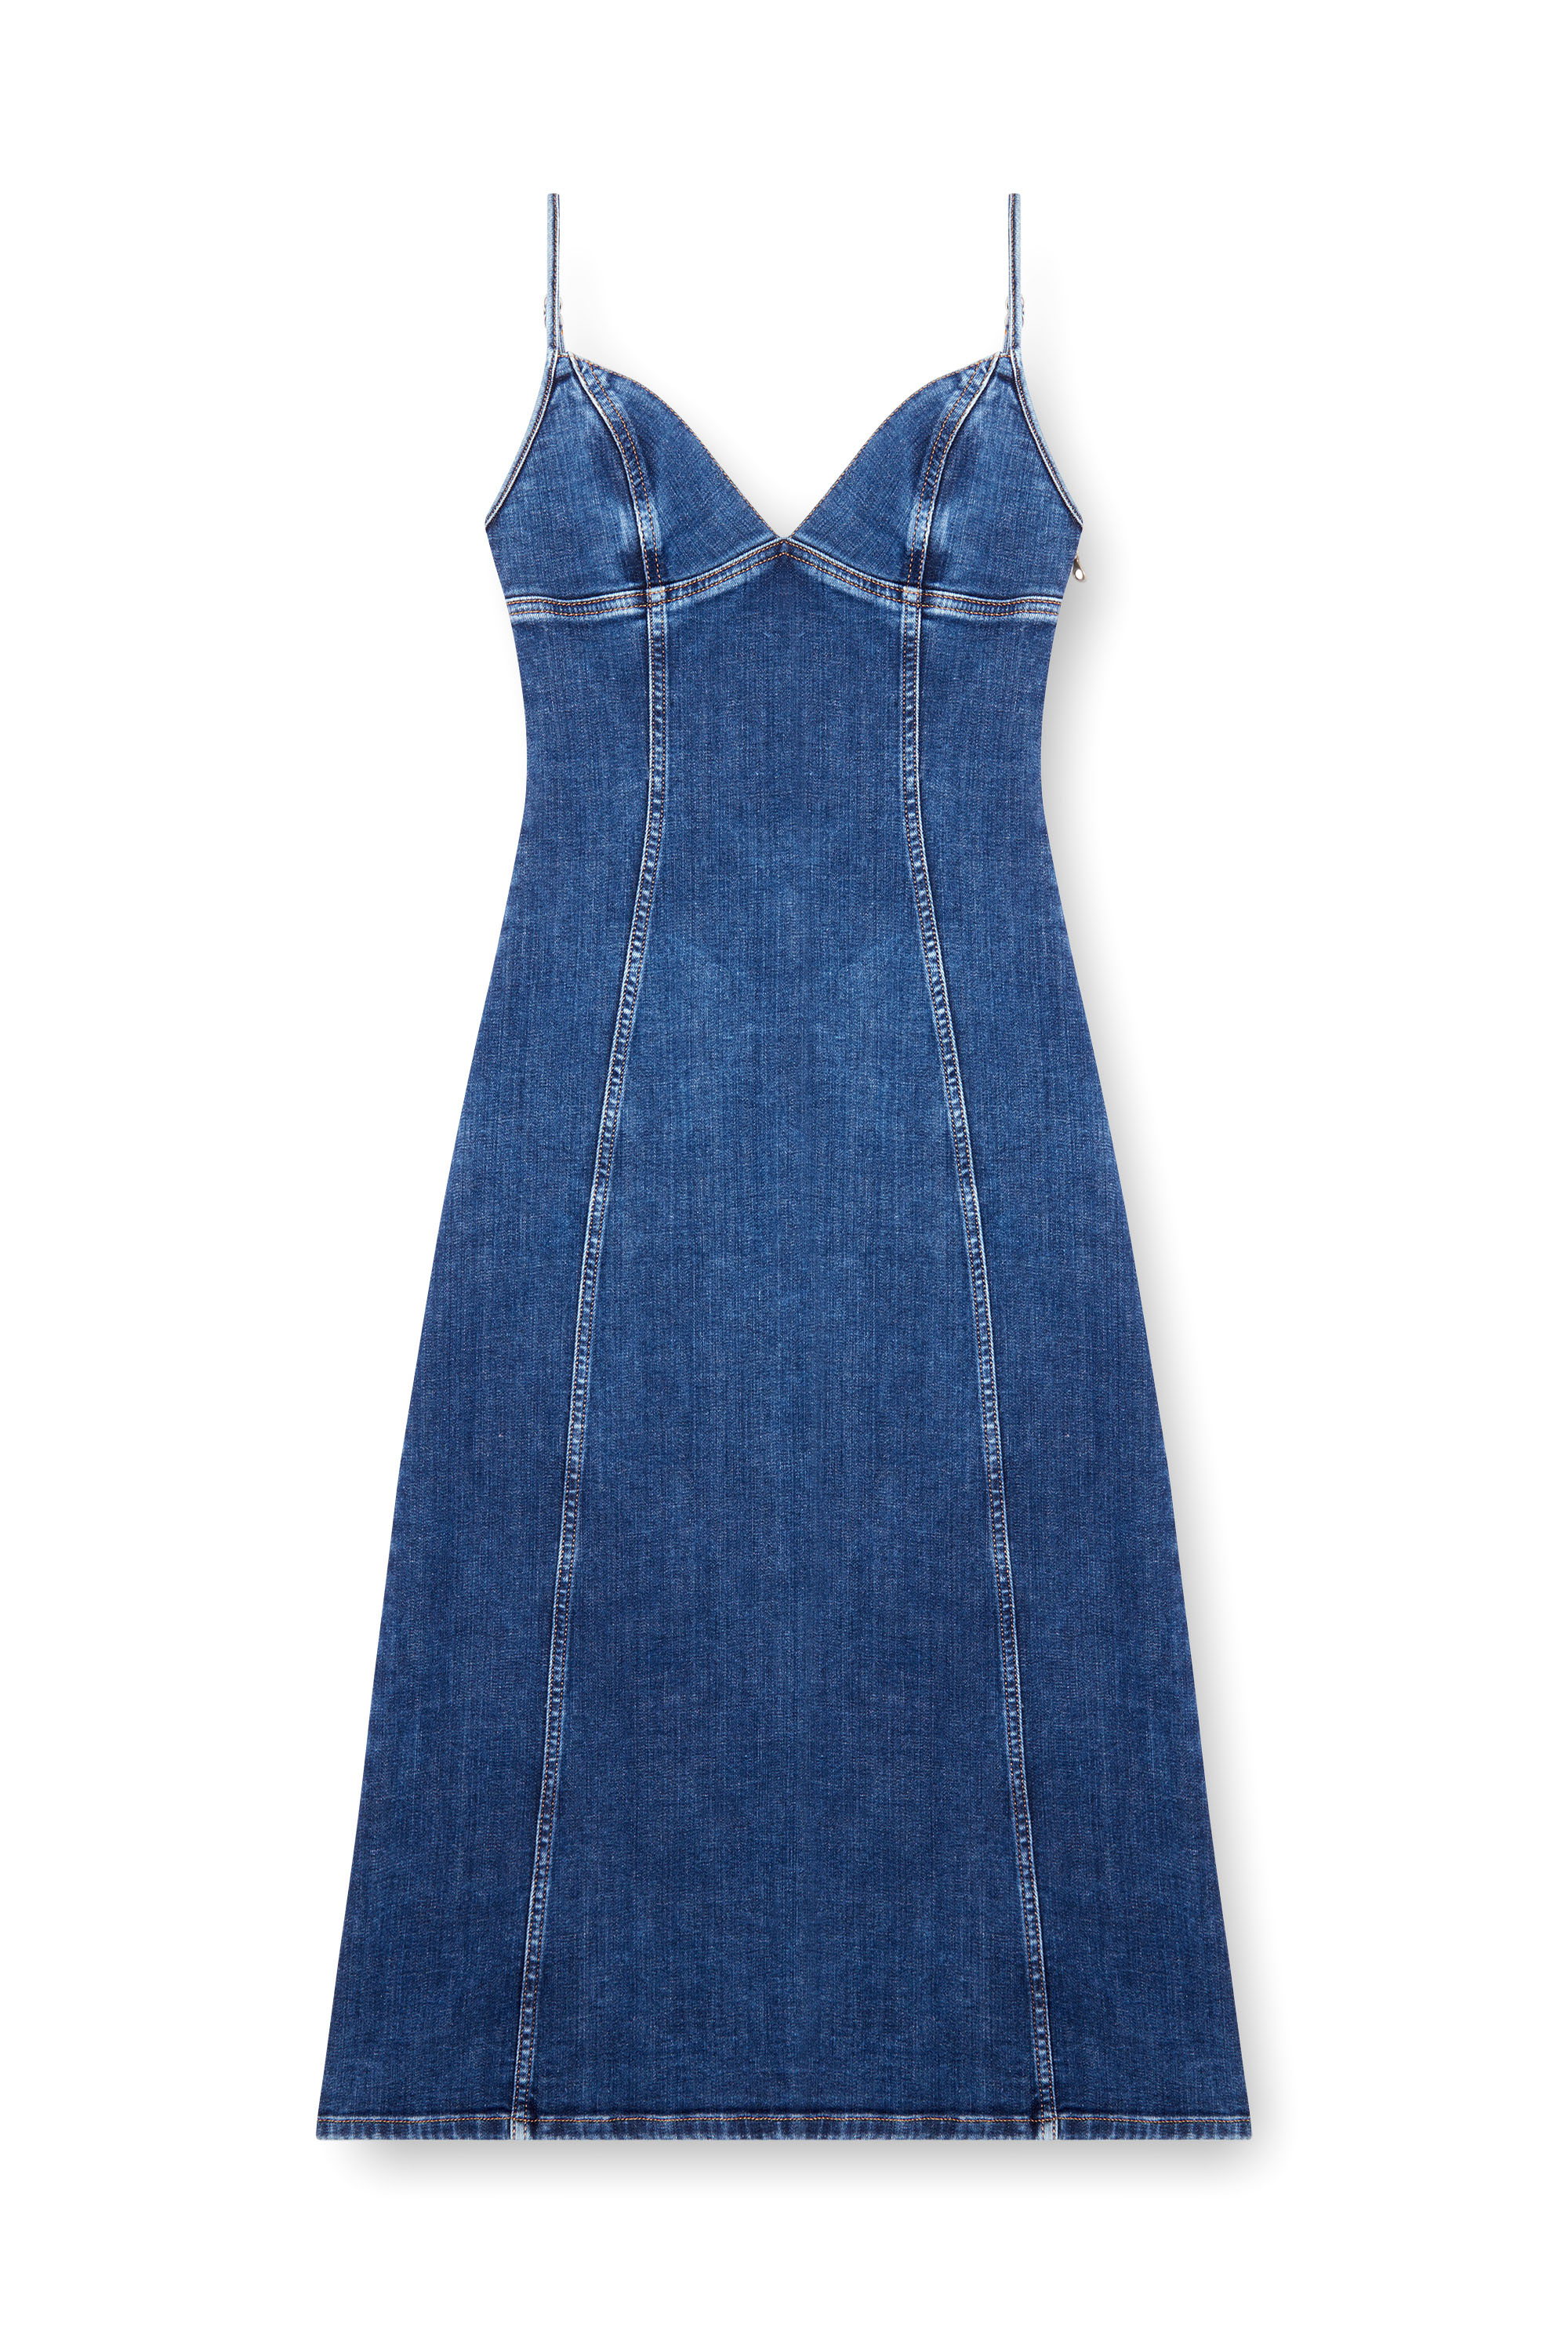 Diesel - DE-FULVY-DRESS-D, Mujer Vestido midi de tirantes en denim in Azul marino - Image 1